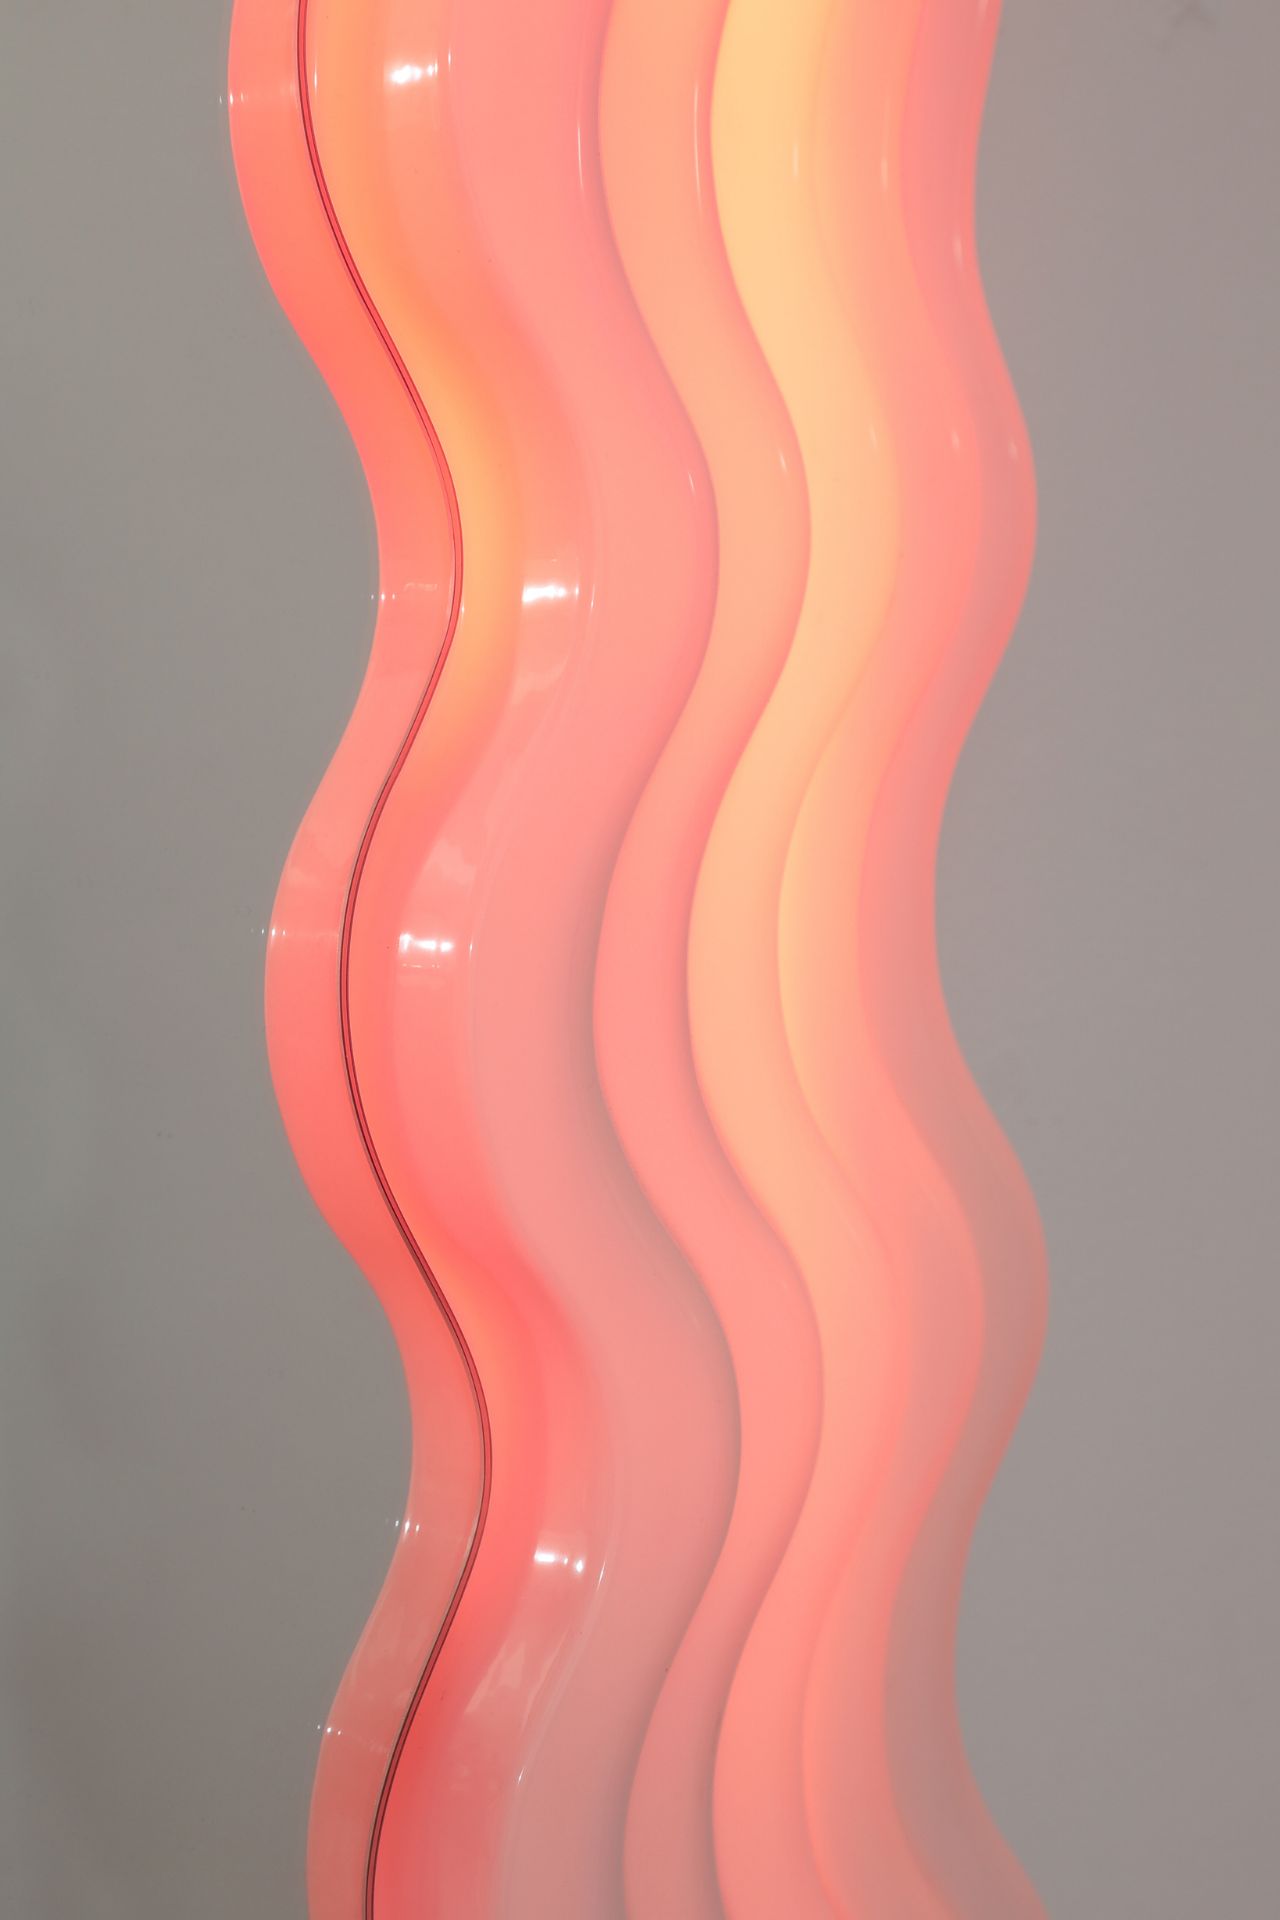 Ettore Sottsass, Poltronova, Standspiegel Modell Ultrafragole - Bild 2 aus 3